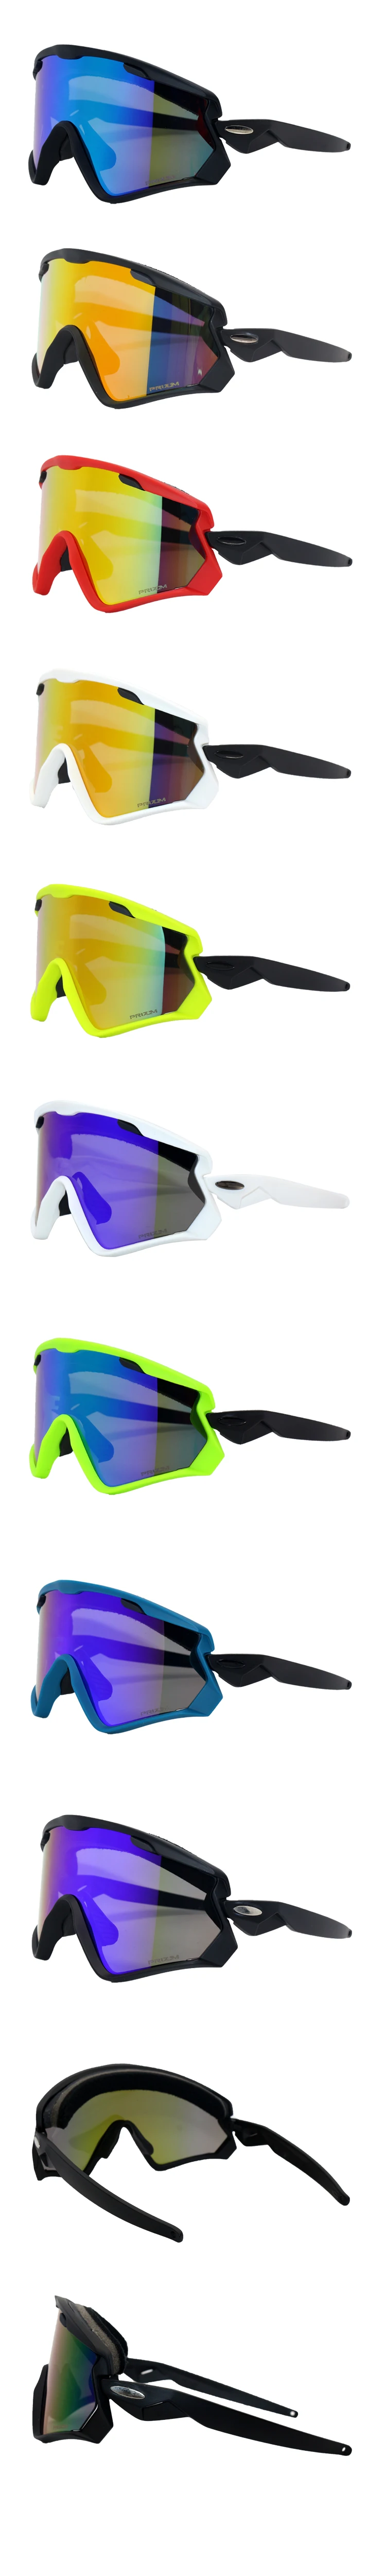 3 линзы, ветрозащитные, для улицы, лыжные очки, очки, спортивные, для велоспорта, солнцезащитные очки, куртки, для мужчин, женщин, очки Googles